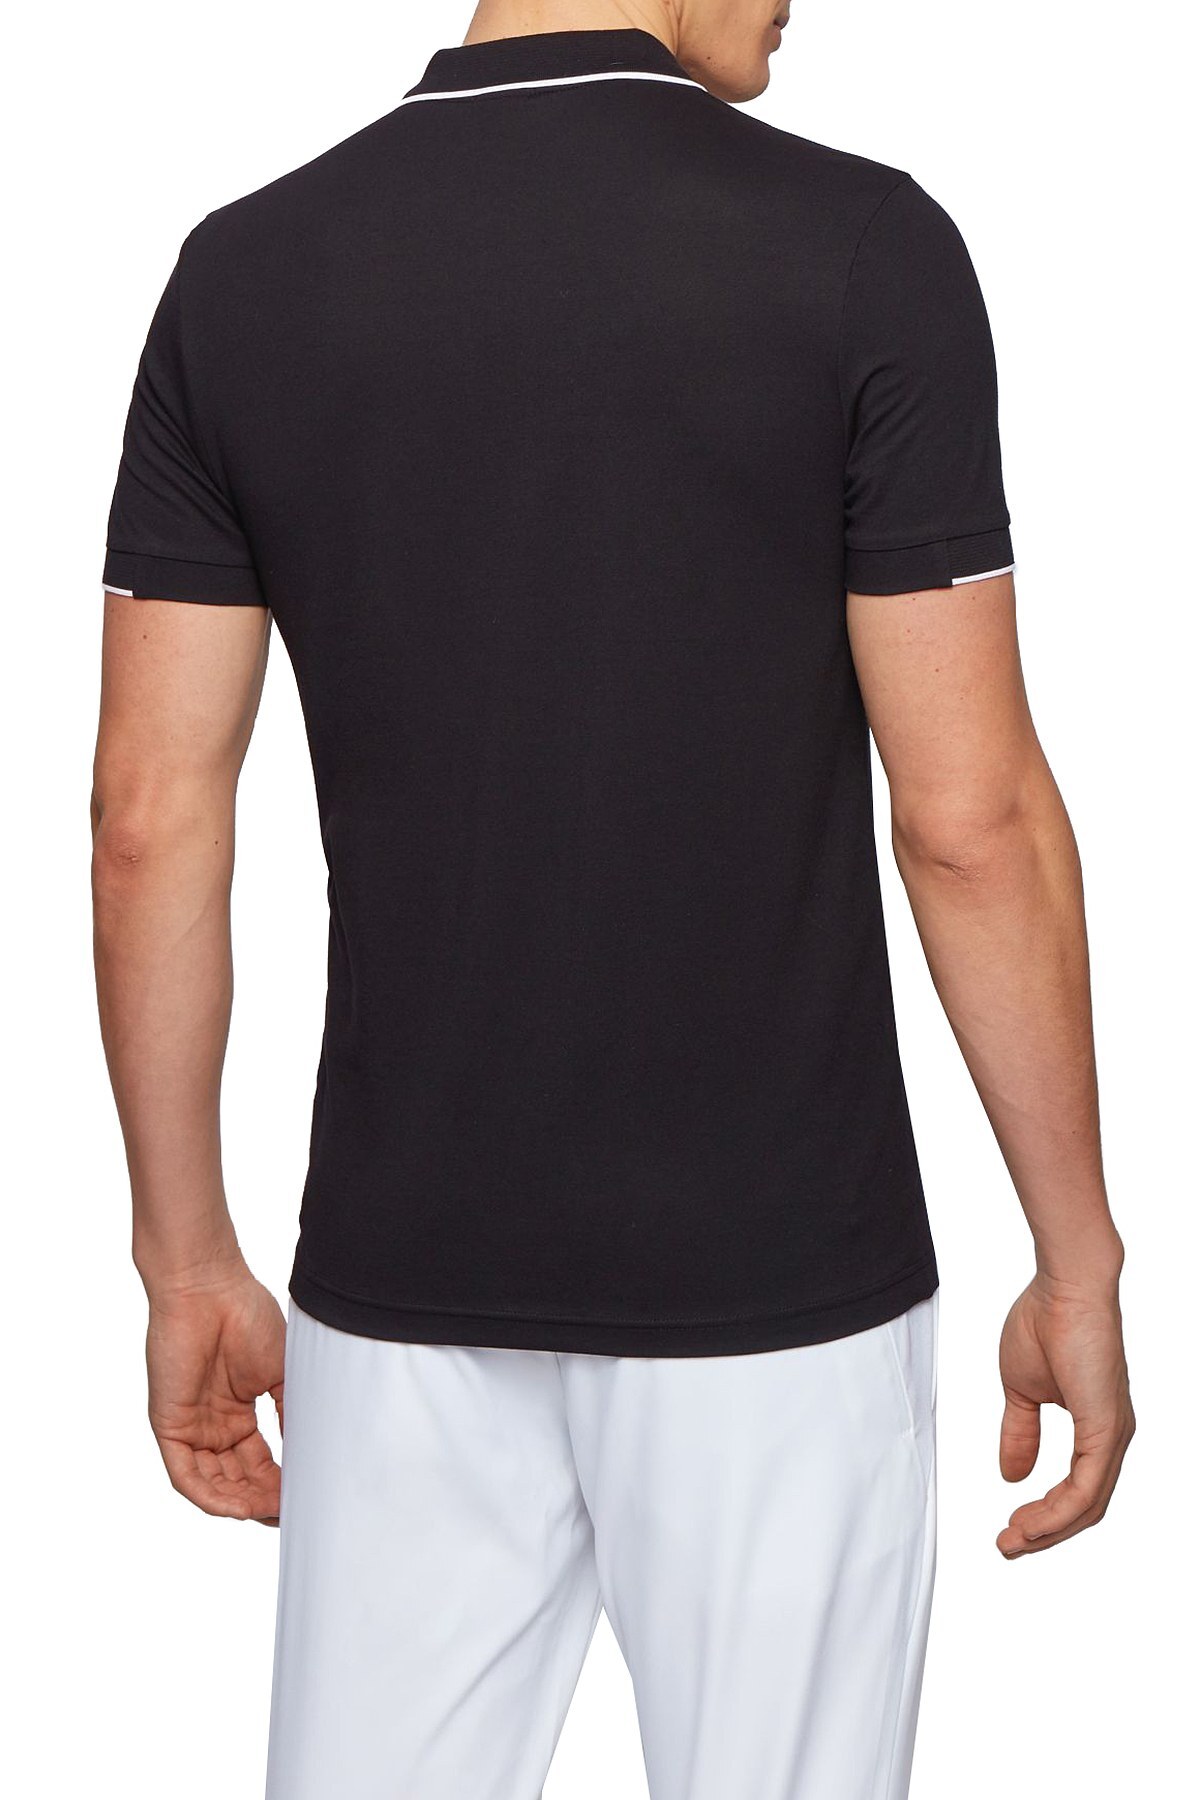 Hugo Boss Slim Fit Pamuklu T Shirt Erkek Polo 50448594 001 SİYAH